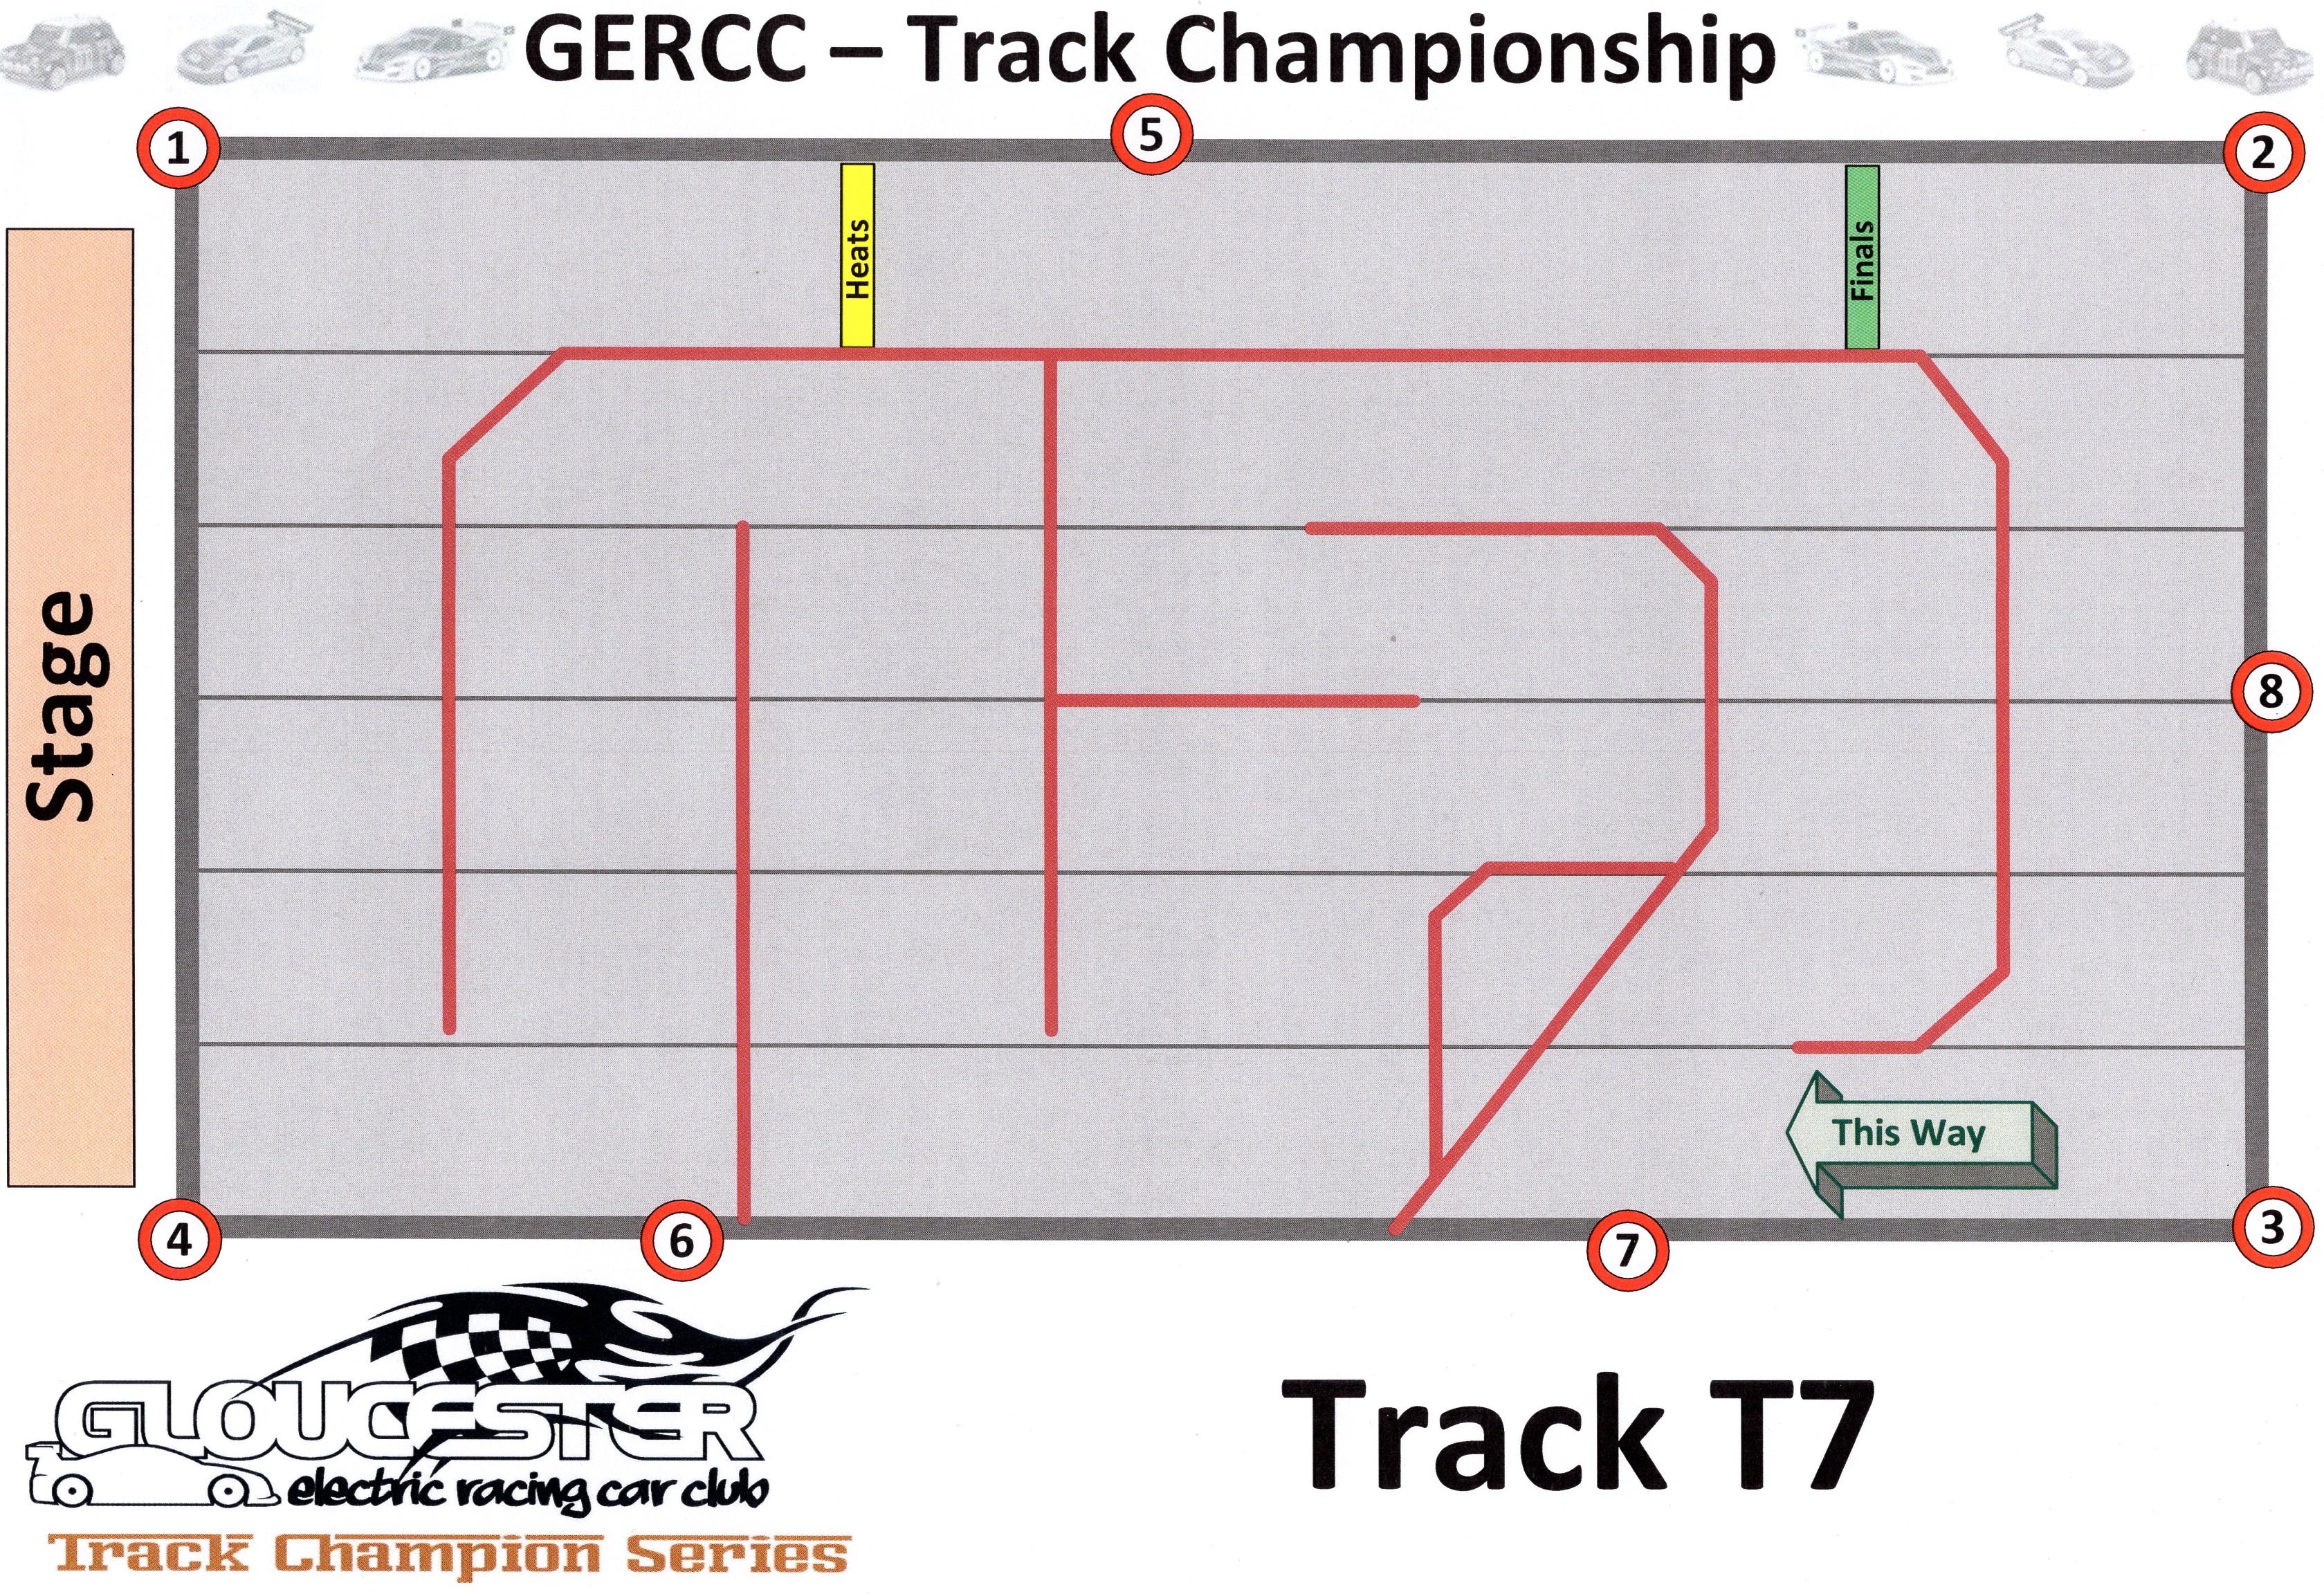 GERCC TCS Track 7